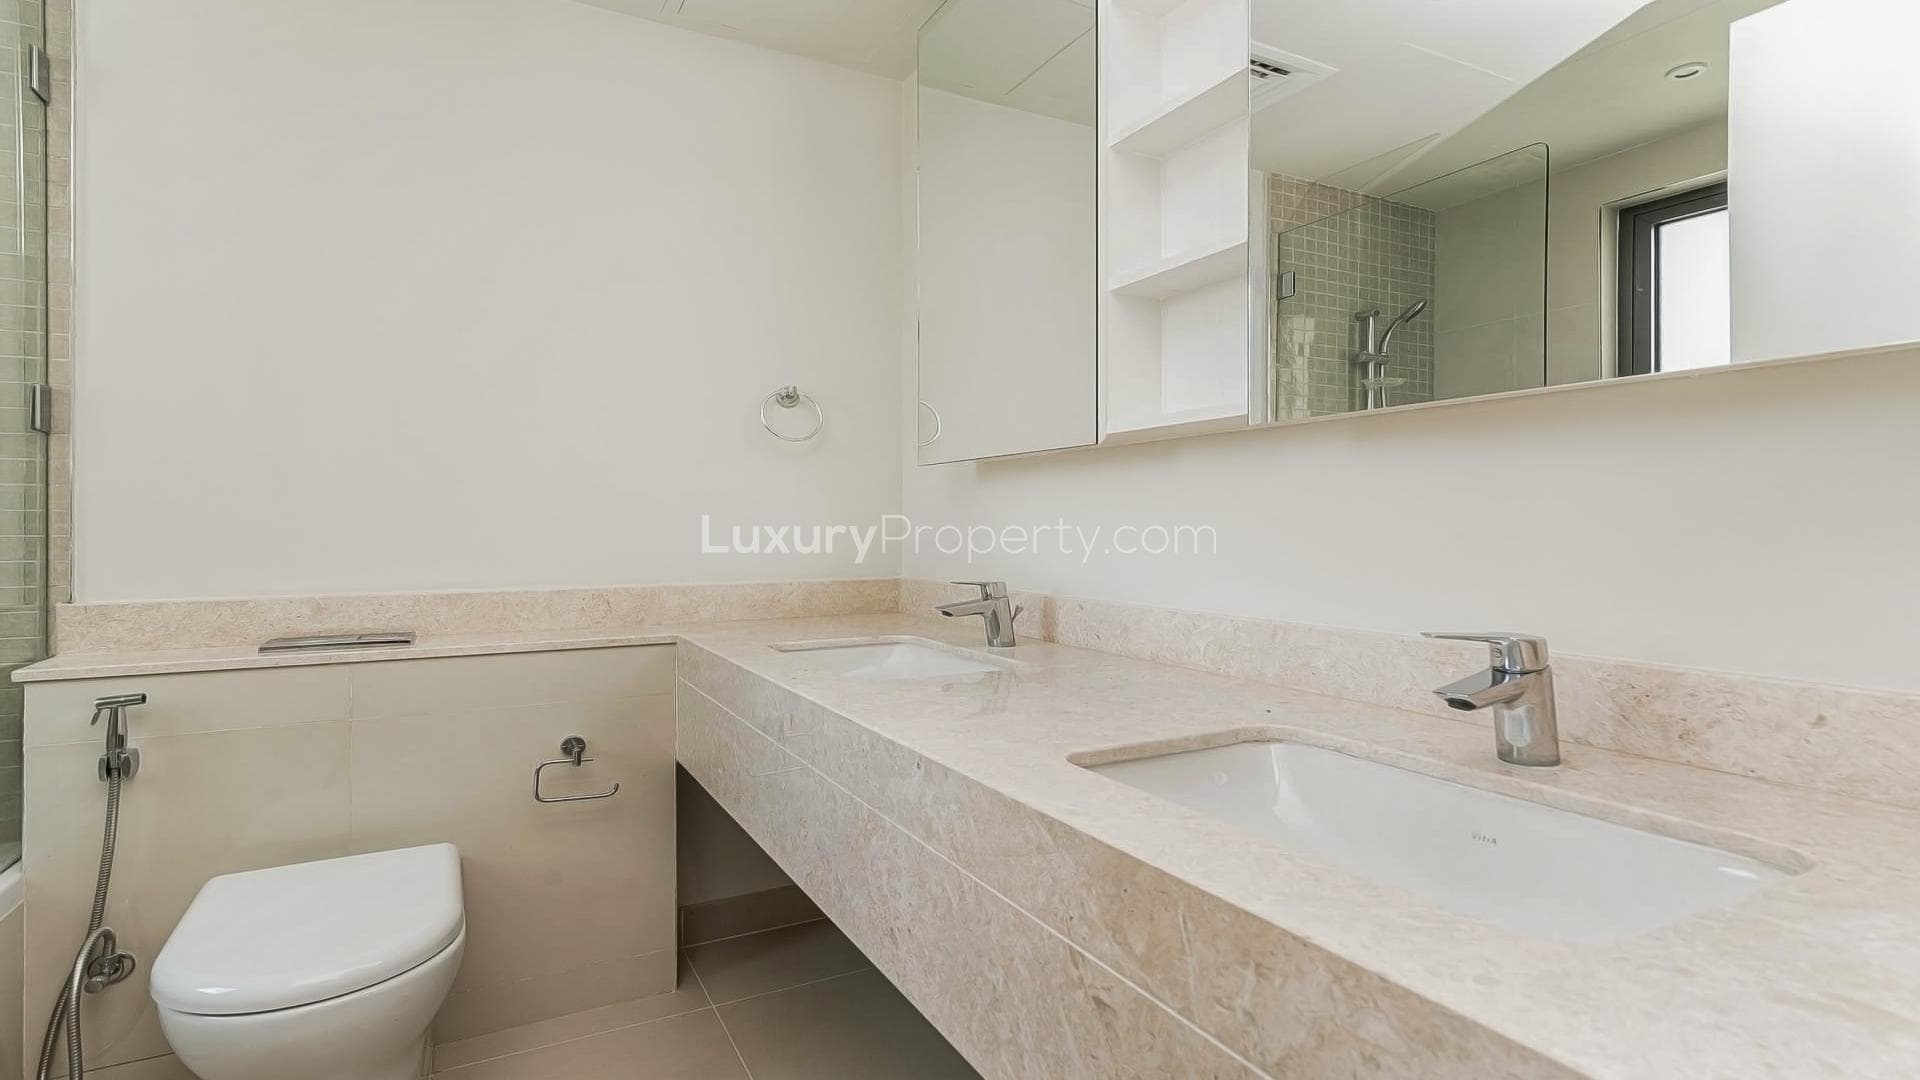 3 Bedroom Villa For Sale Maple At Dubai Hills Estate Lp18588 173a72294cfa9100.jpg